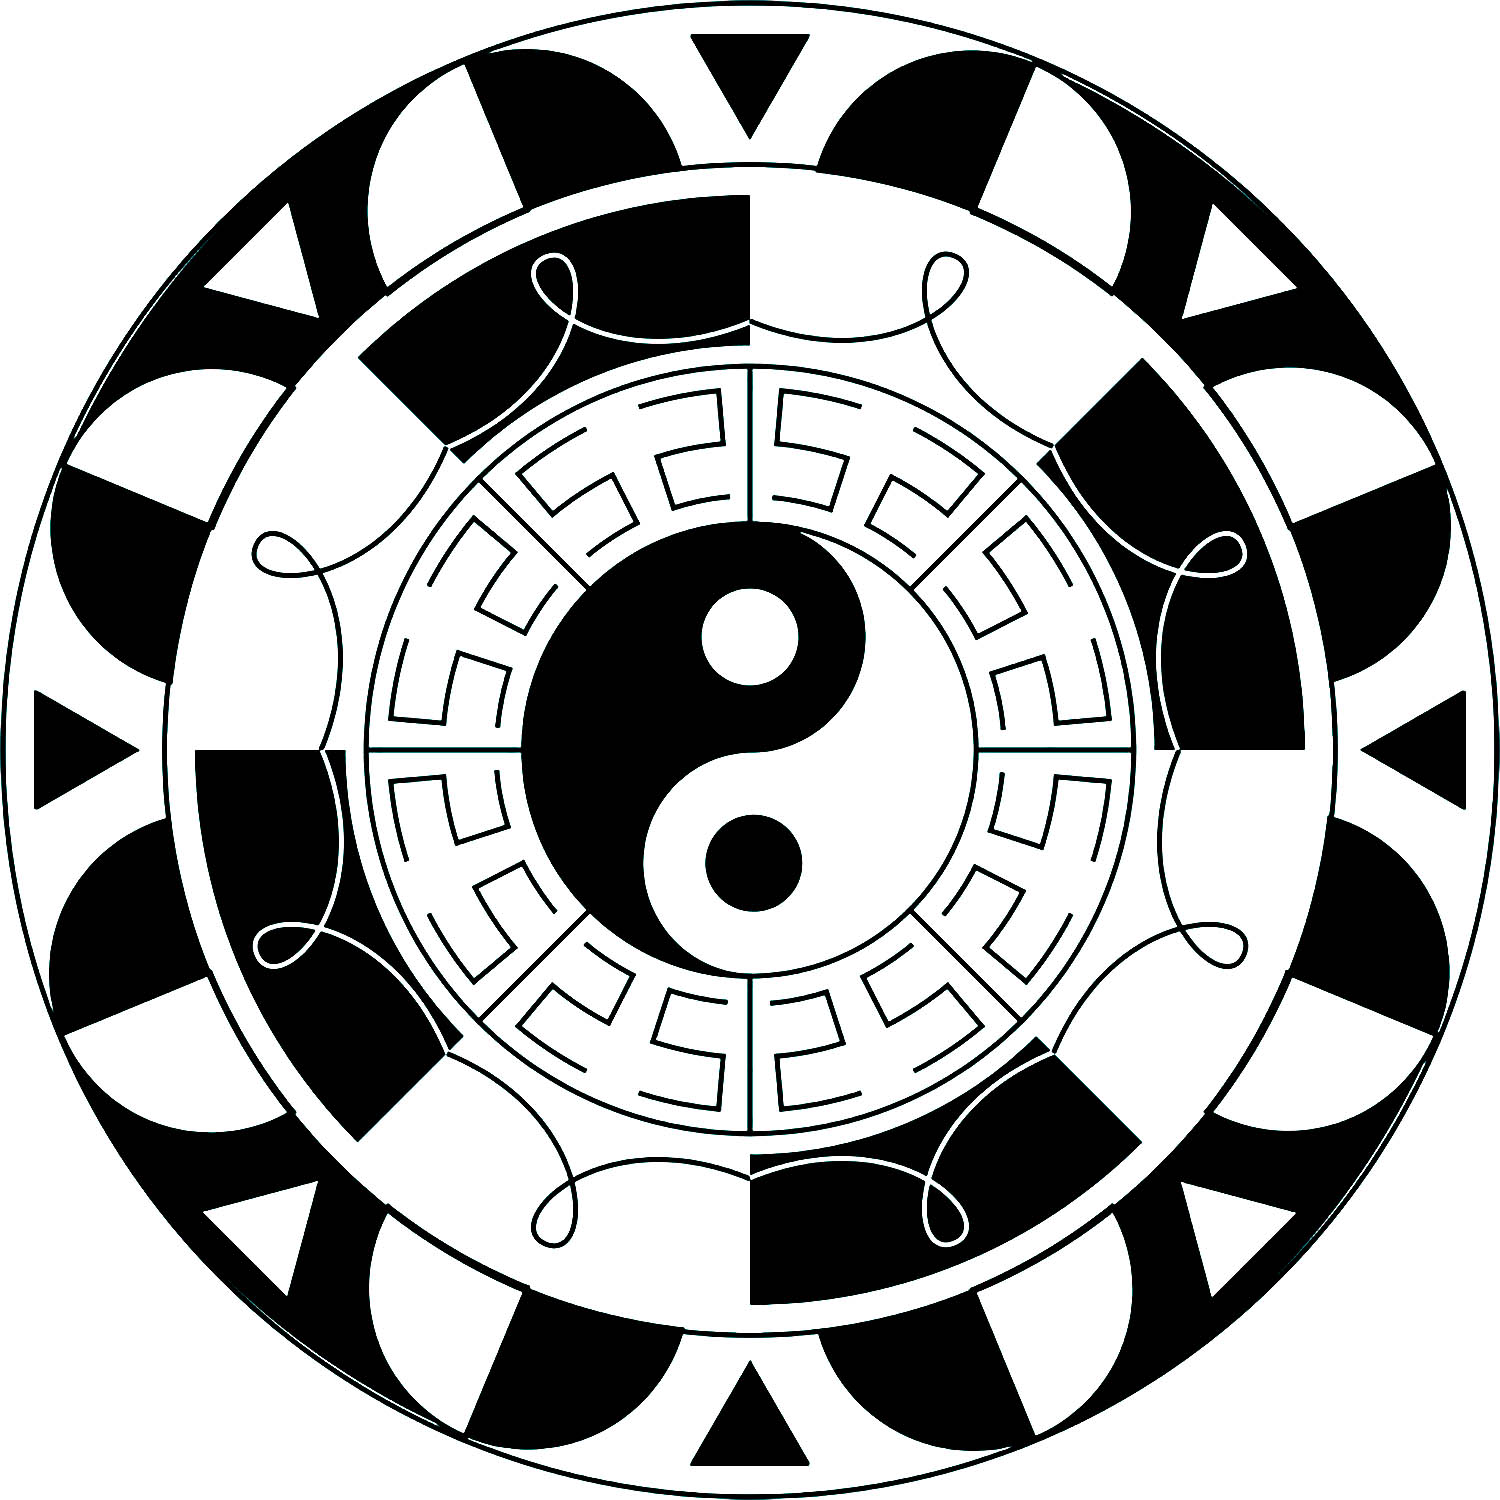 El yin y el yang es un antiguo símbolo chino que representa la naturaleza dual de las cosas, como la luz y la oscuridad, el bien y el mal, lo positivo y lo negativo.